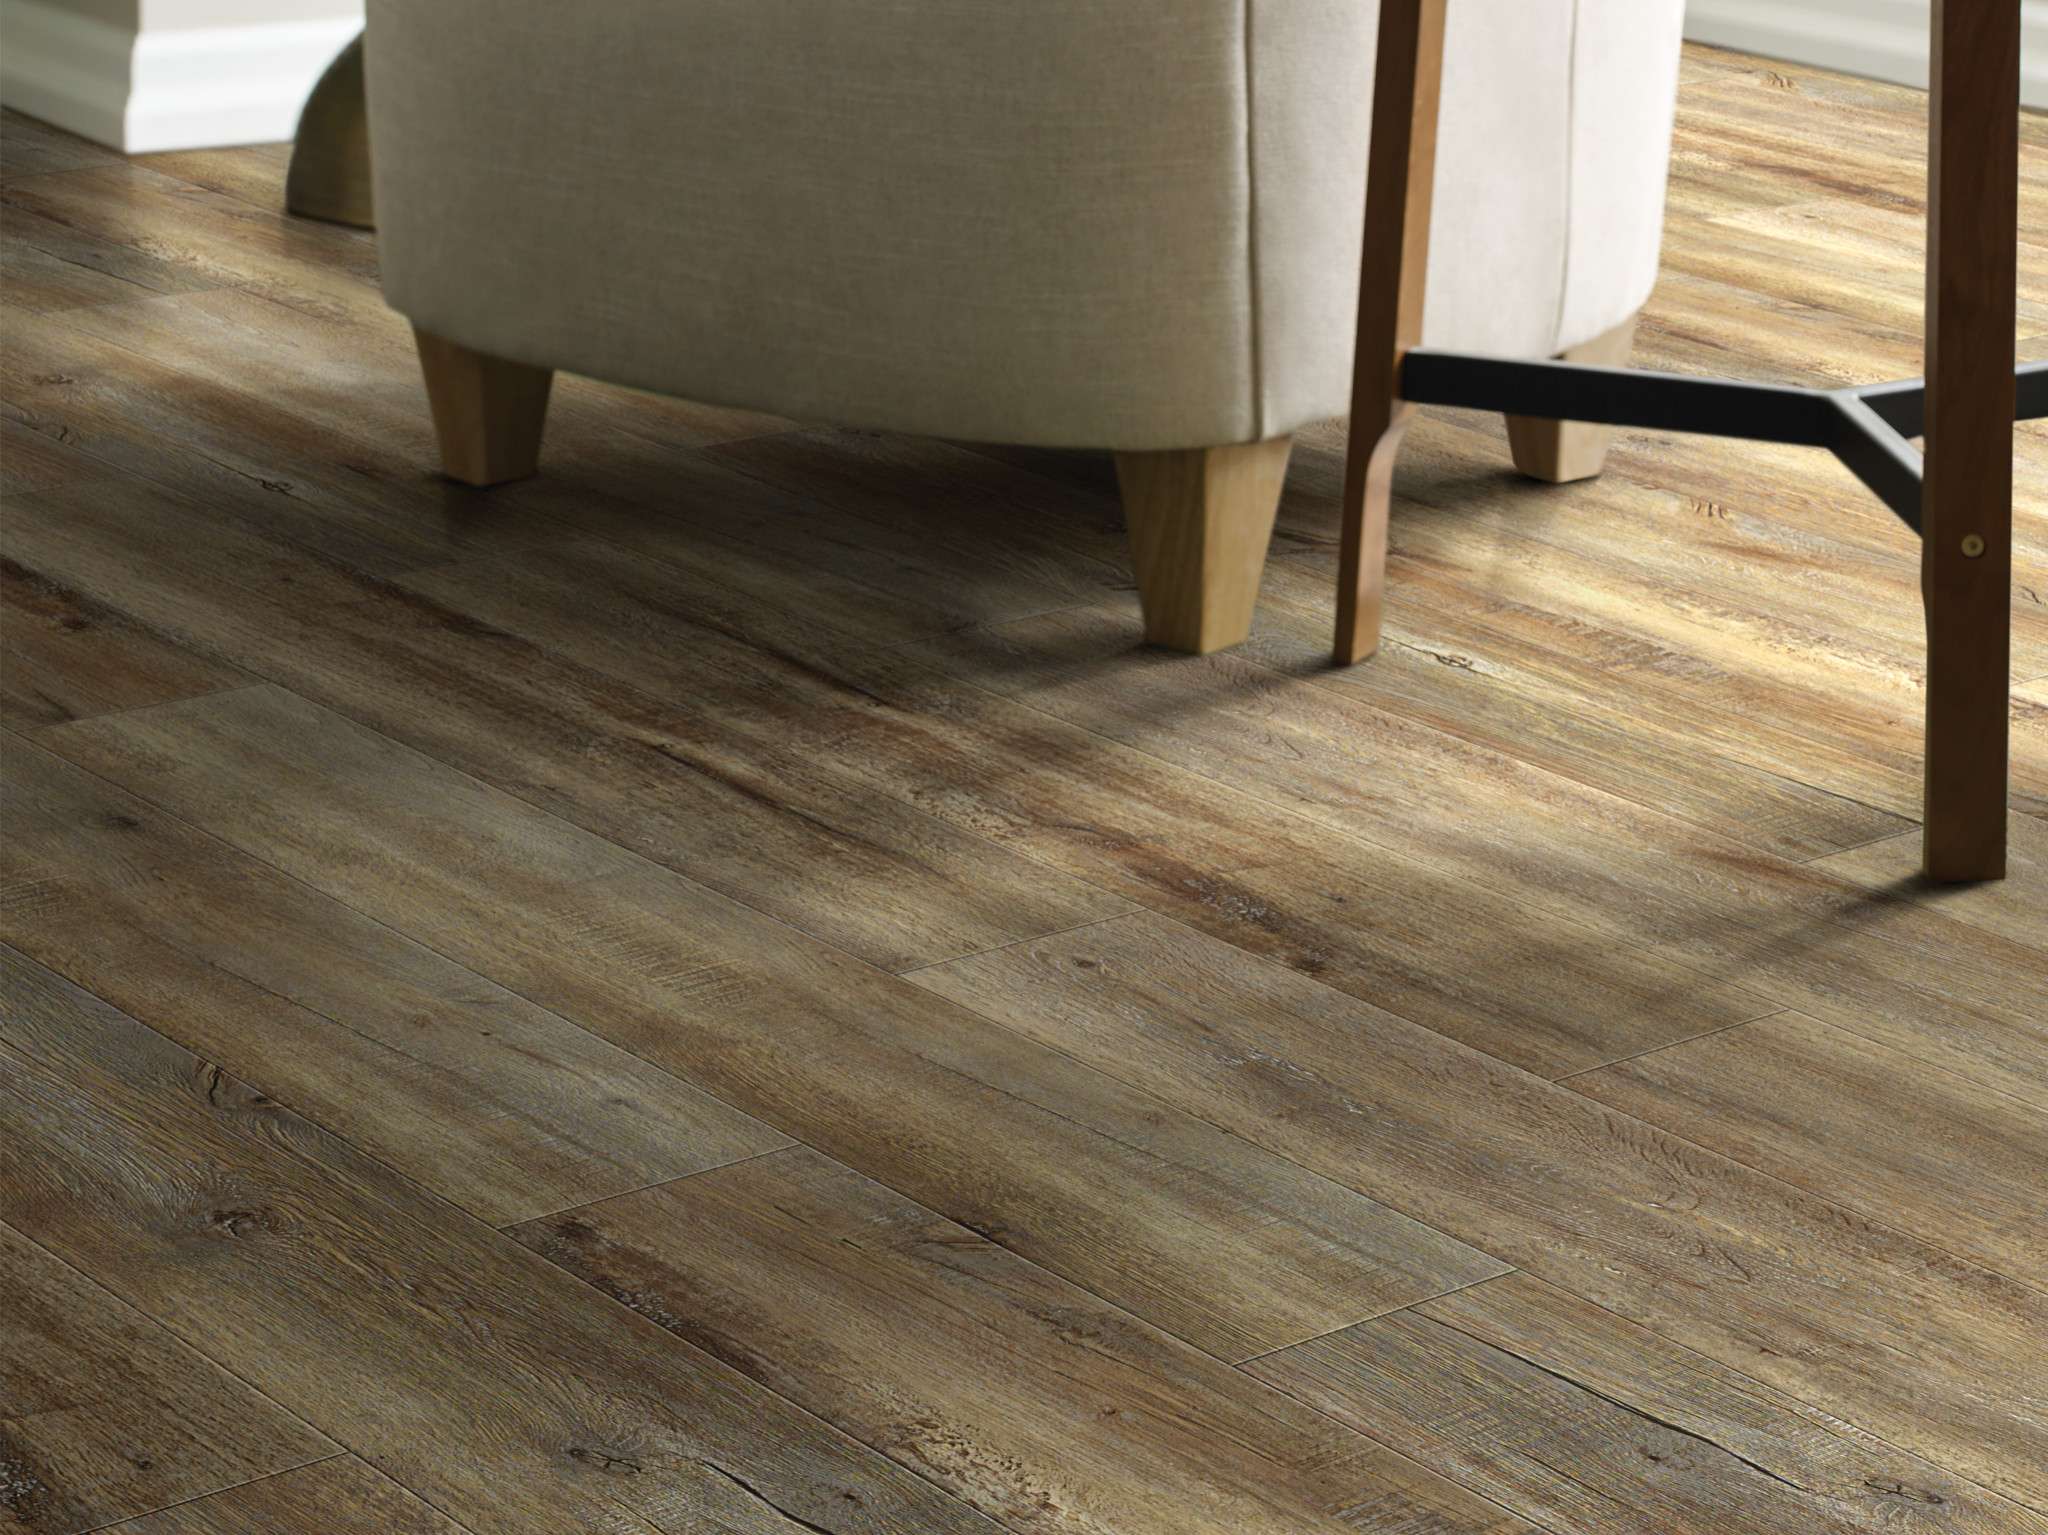 Impact 0925v Modeled Oak Vinyl, How To Clean Resilient Vinyl Plank Floor